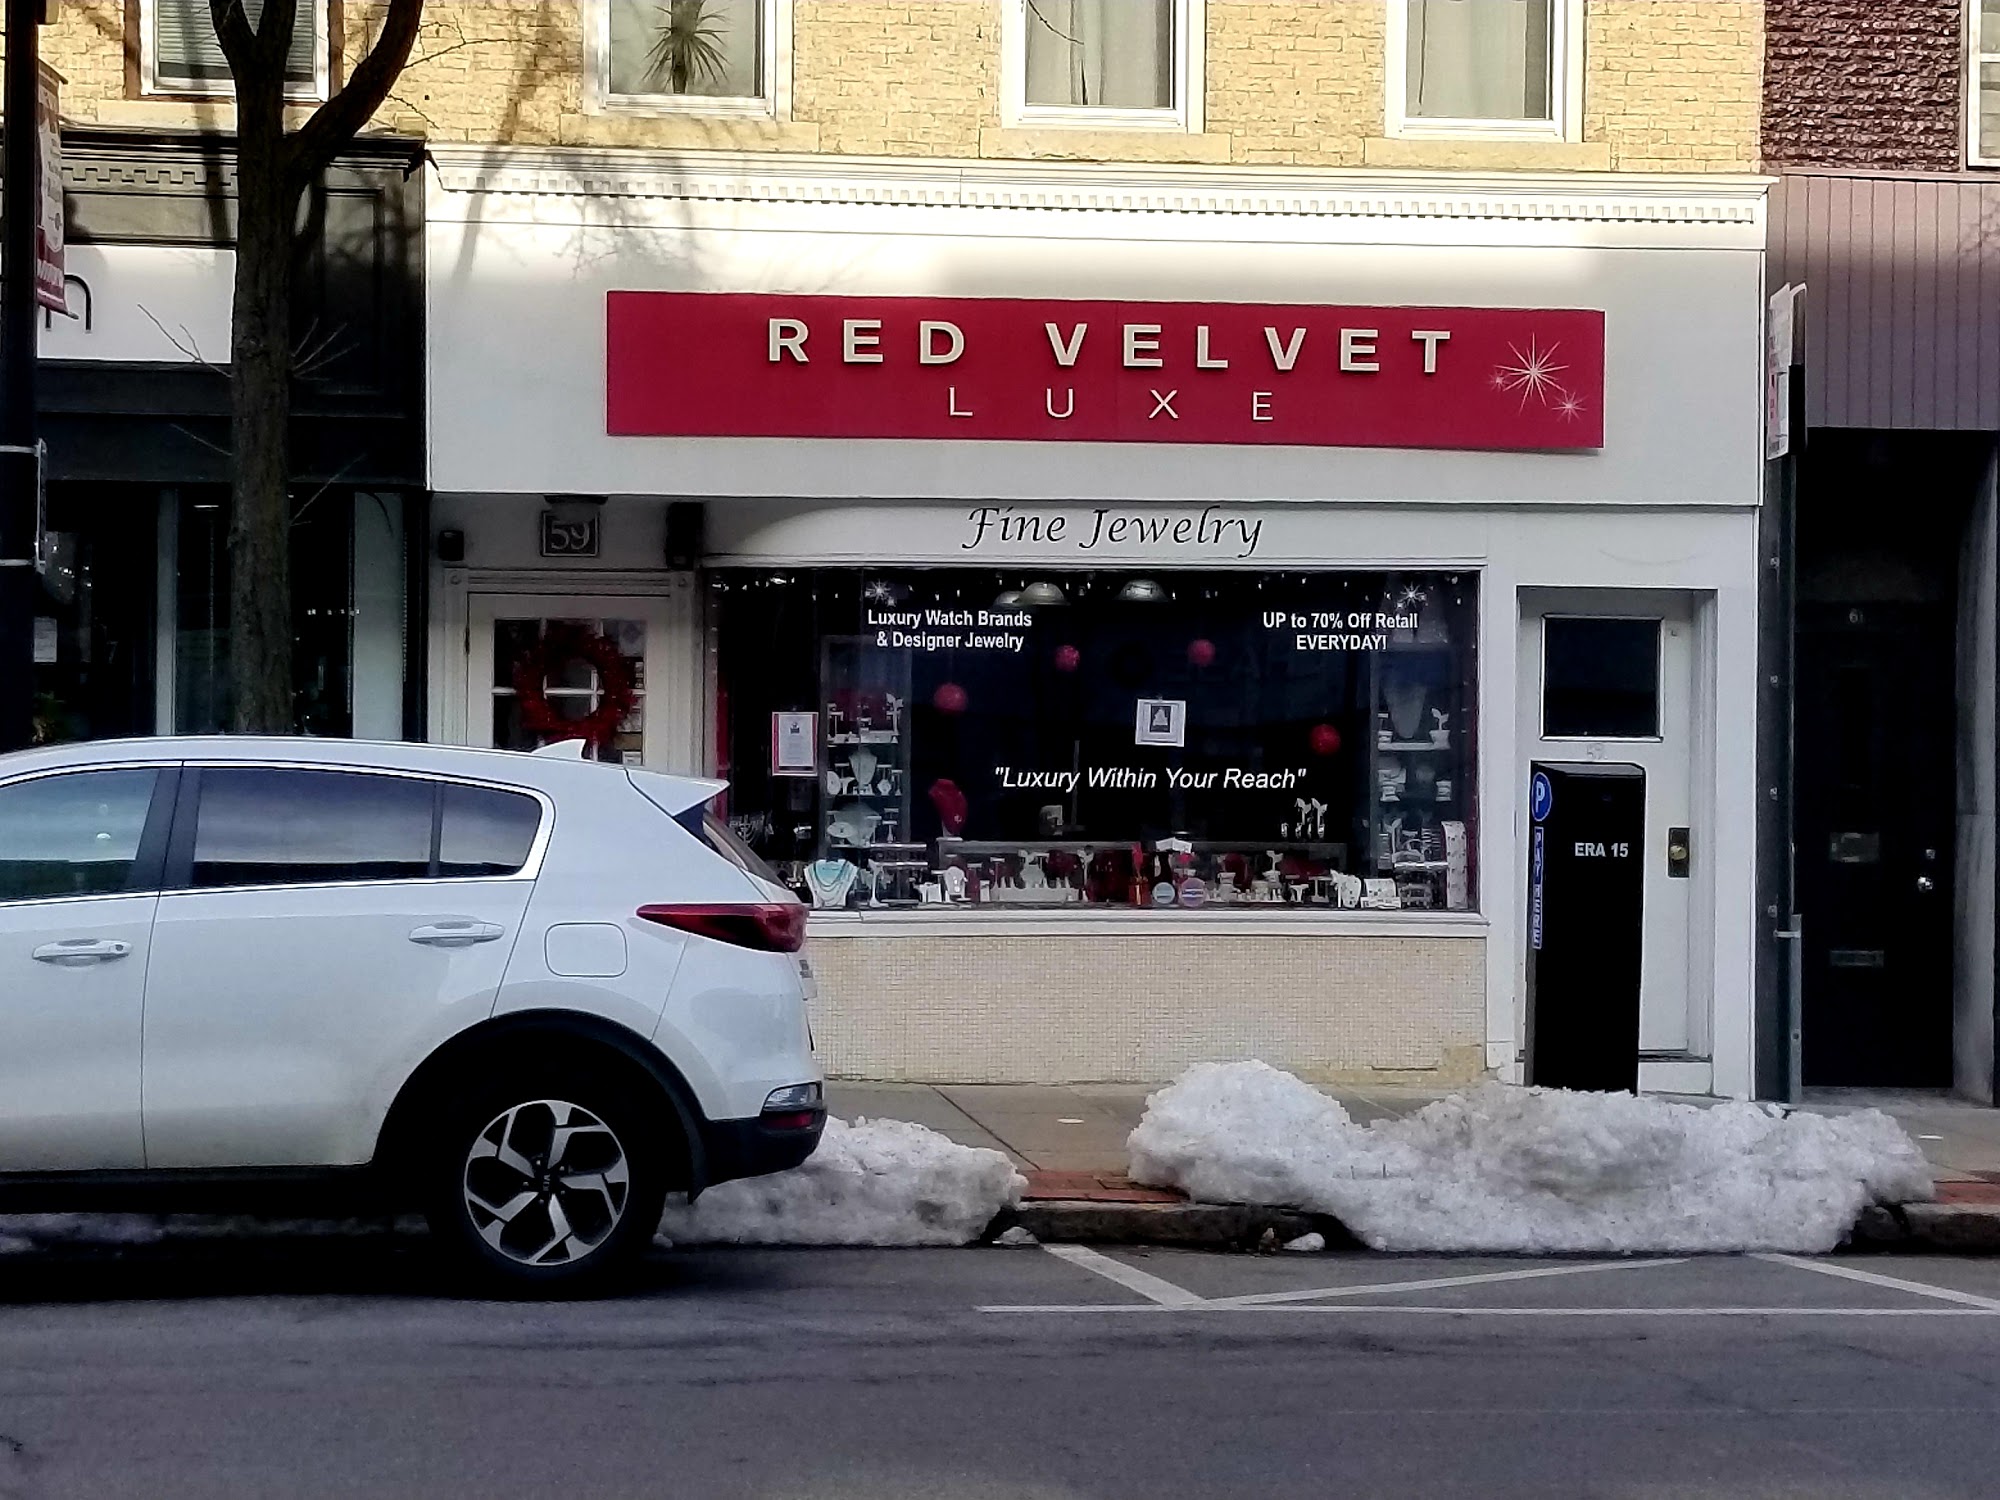 Red Velvet Luxe